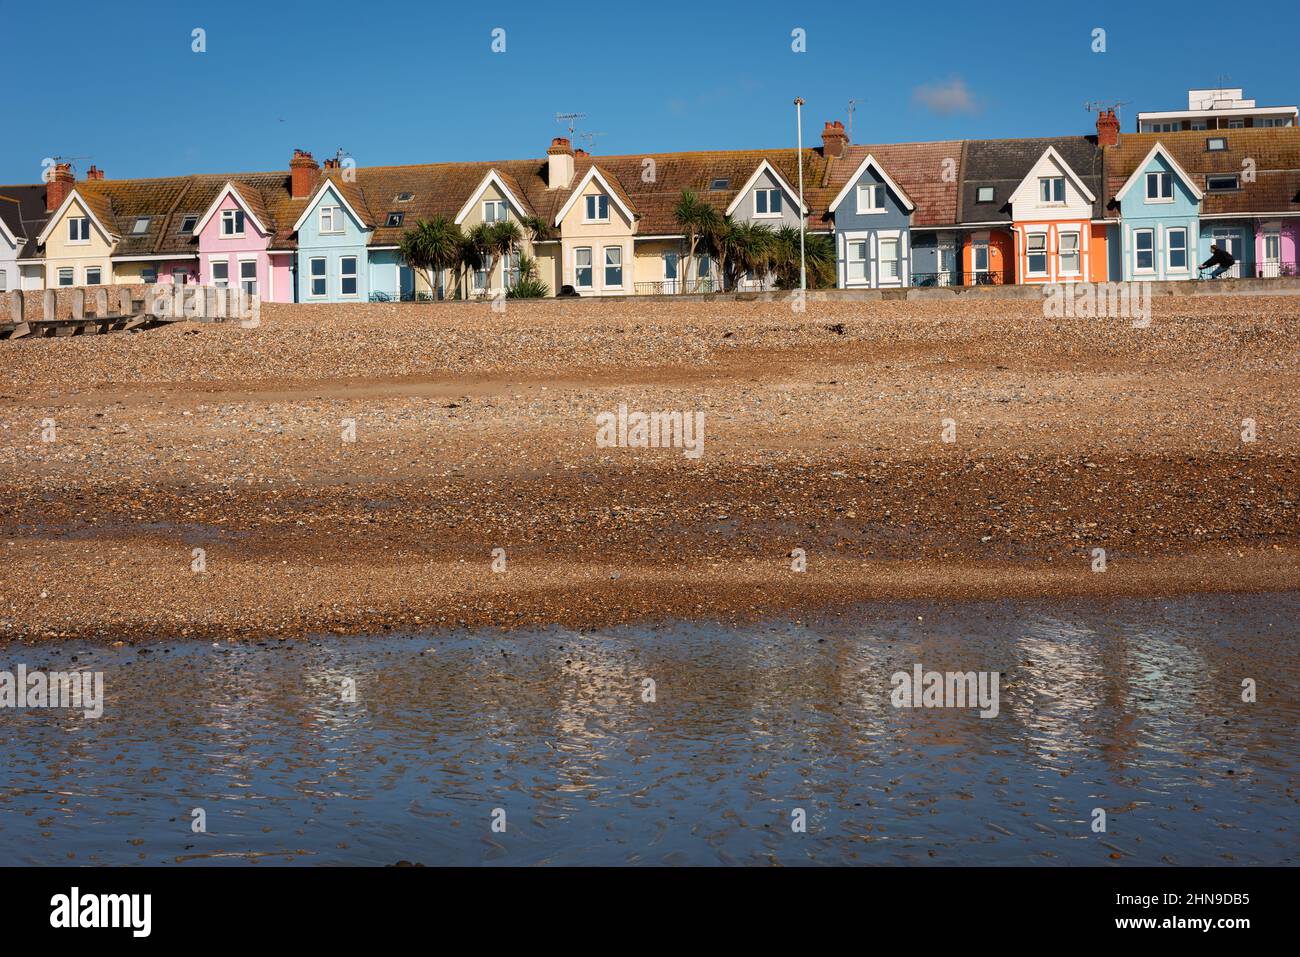 Coloridas casas adosadas de estilo eduardiano en Worthing Seafront, West Sussex, Reino Unido Foto de stock